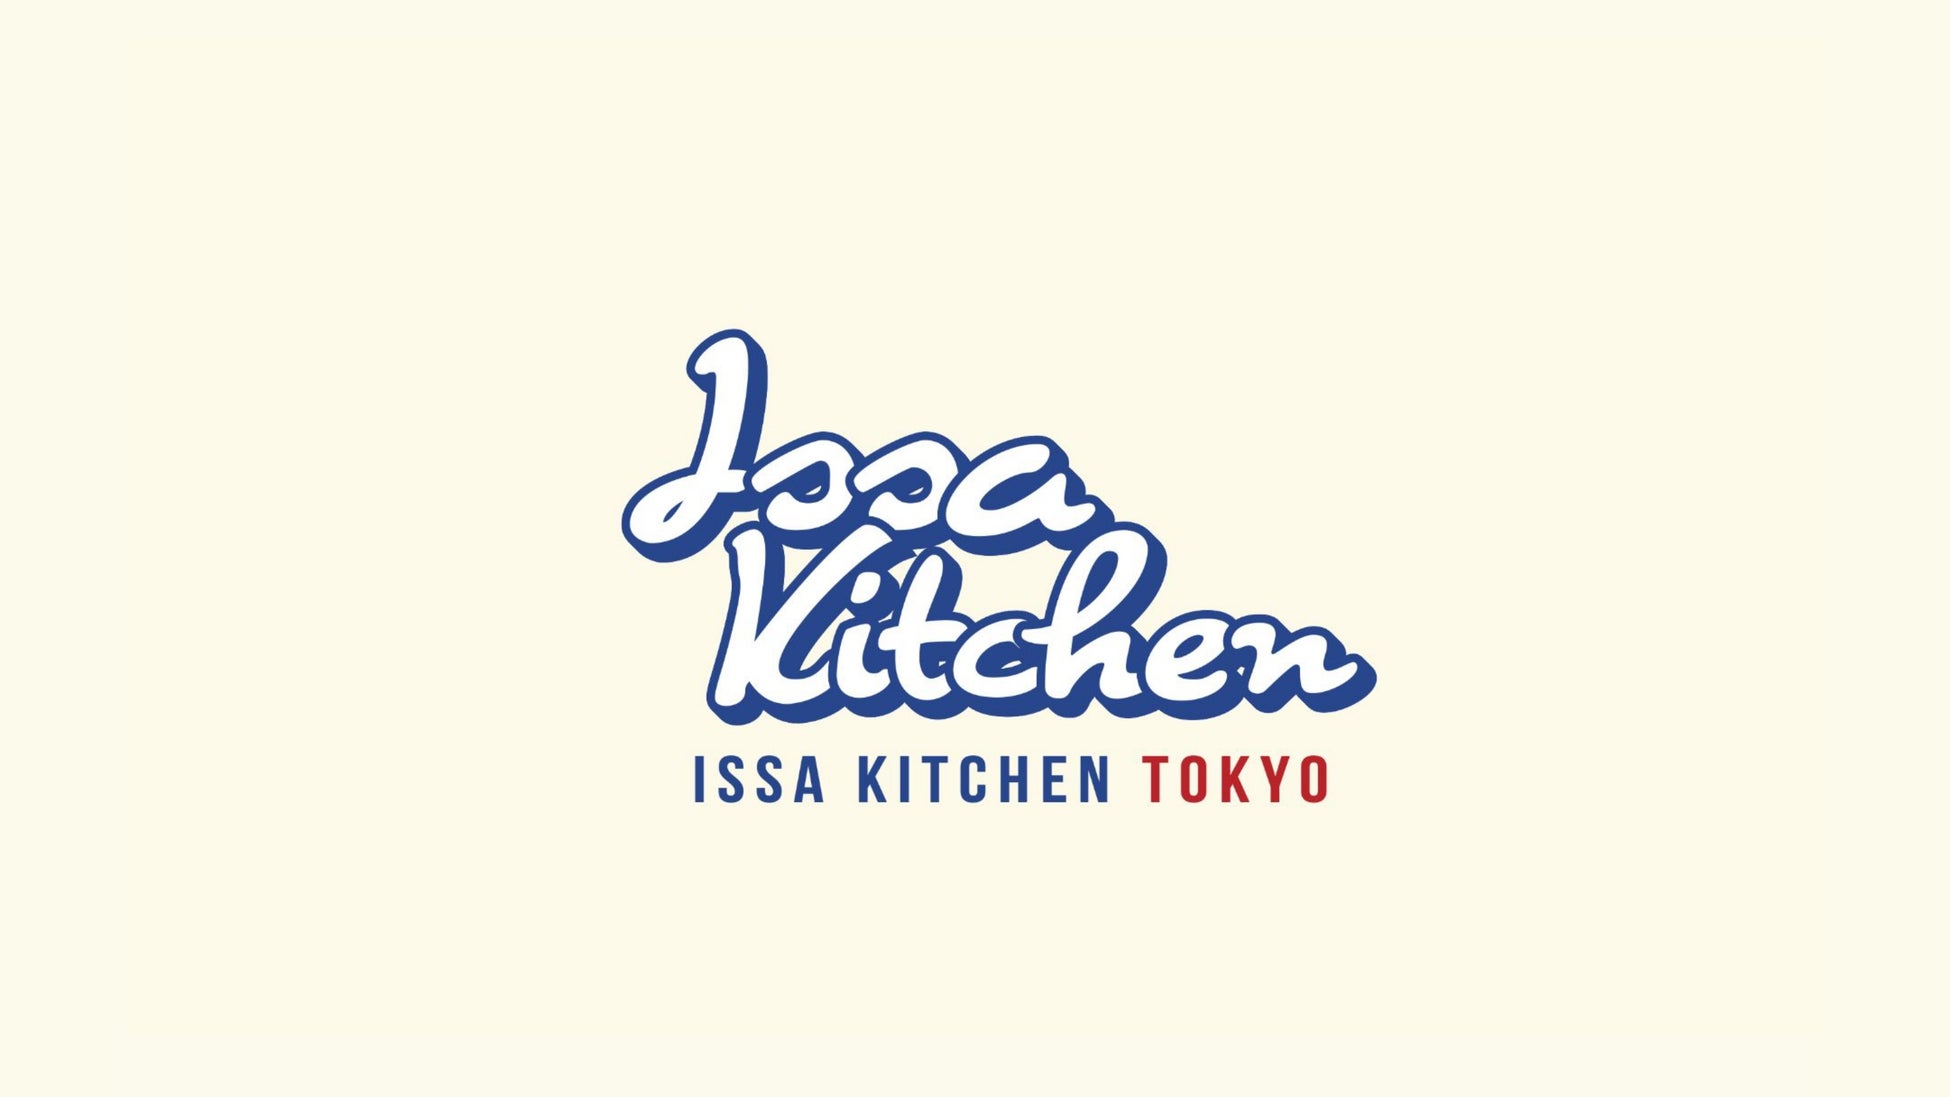 アレルゲンフリー（２８品目不使用）＆ヴィーガンの両方に対応したお菓子ブランド「ISSA KITCHEN TOKYO」、有楽町マルイに期間限定で出店！